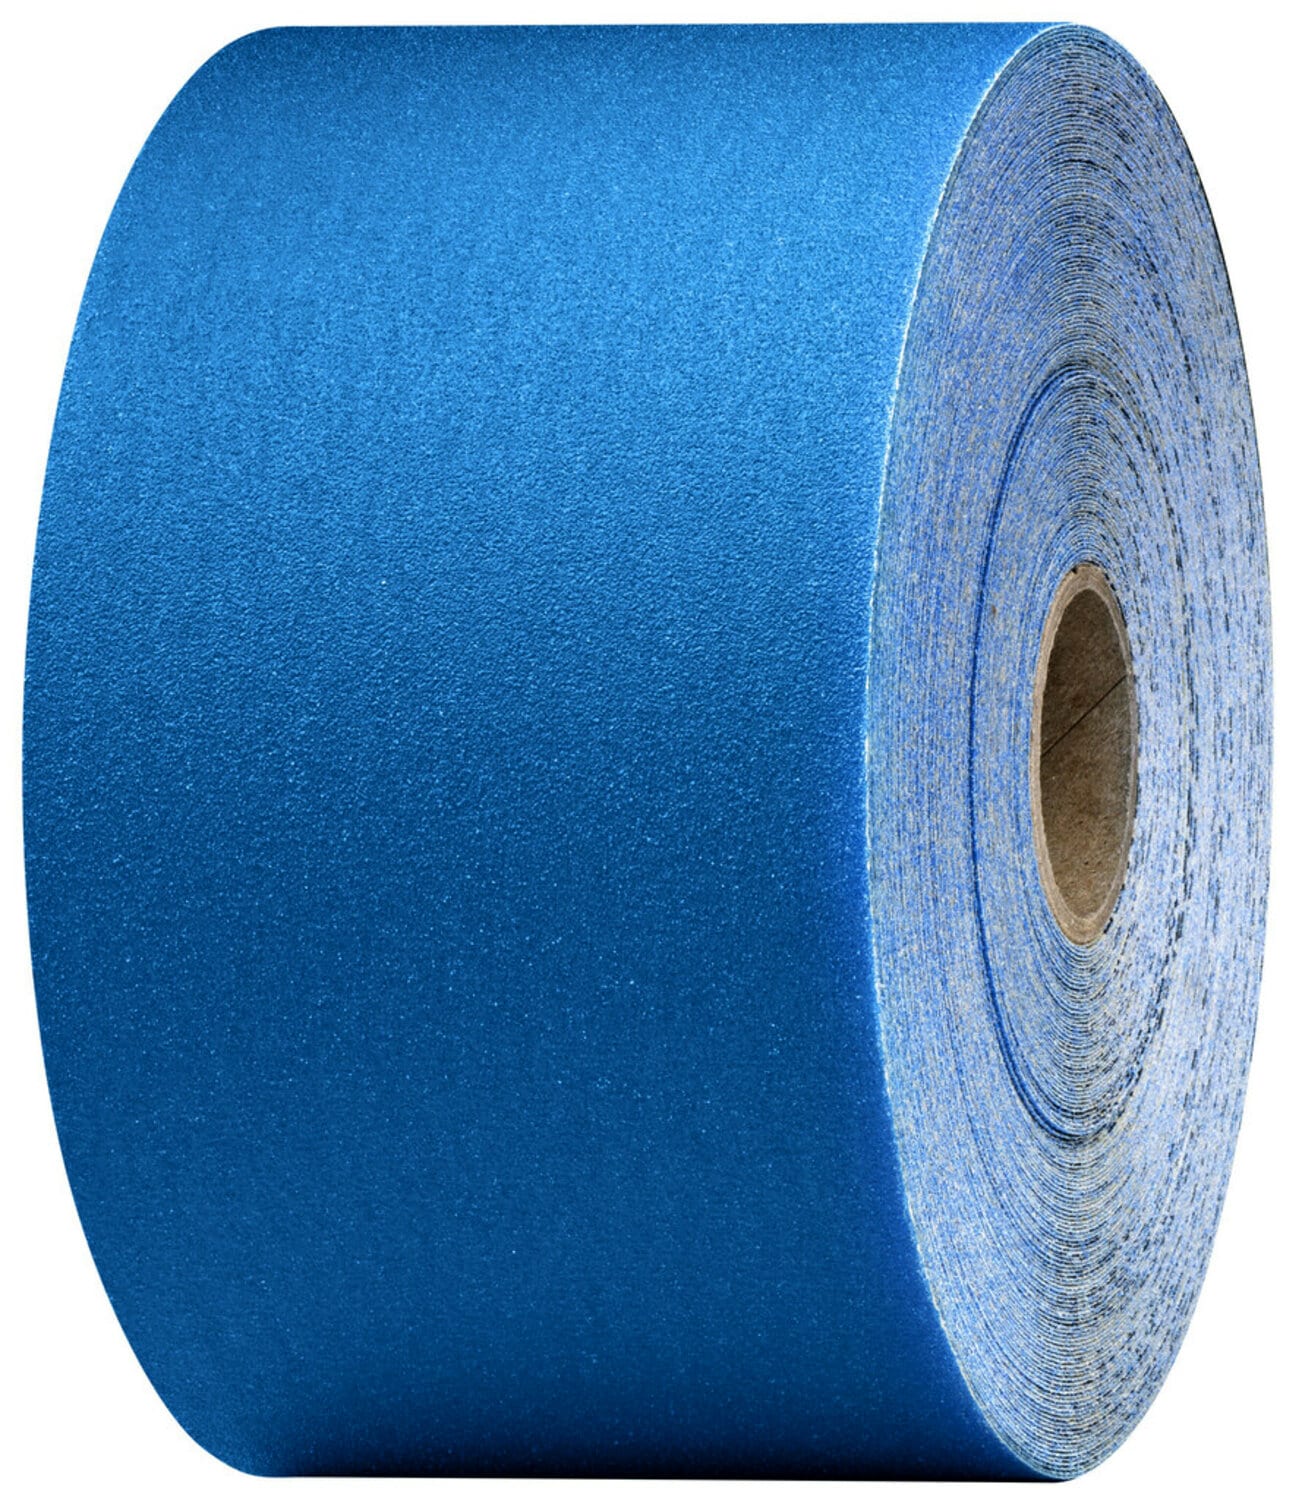 7100098250 - 3M Stikit Blue Abrasive Sheet Roll, 36220, 150, 2-3/4 in x 30 yd, 5
rolls per case